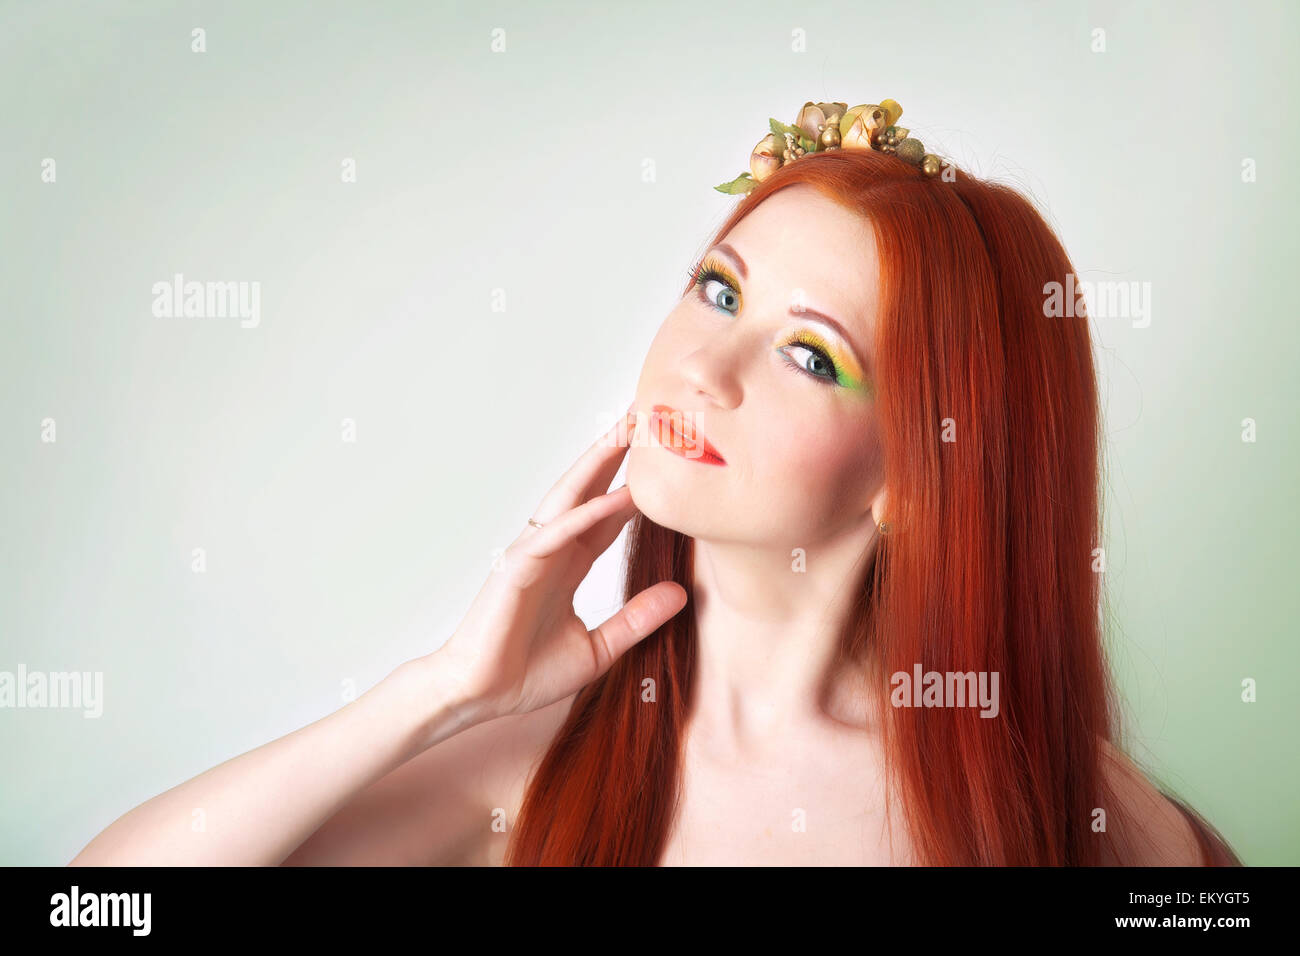 Portrait de la belle fille aux cheveux roux avec des fleurs dans ses cheveux et maquillage lumineux Banque D'Images